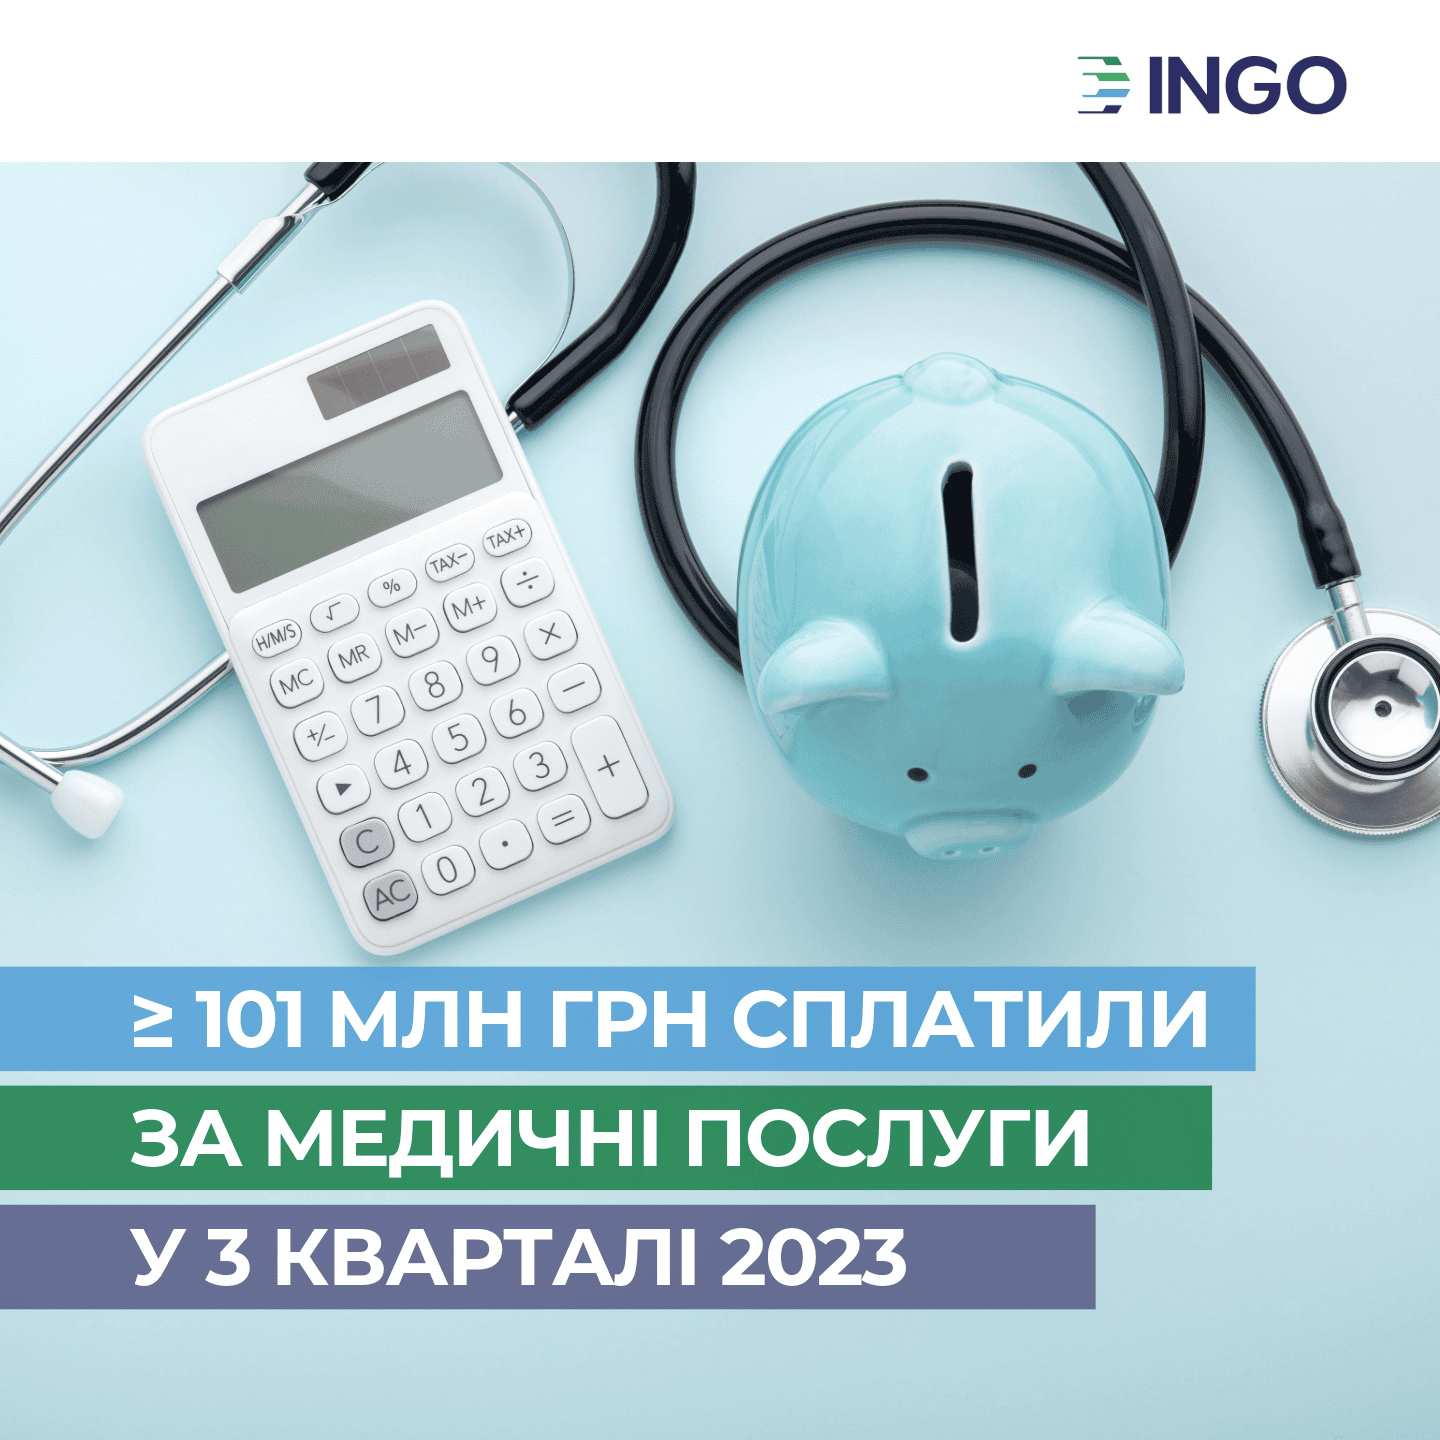 Более 101 млн грн оплатила «ИНГО» за медицинские услуги застрахованных в 3-м квартале 2023 года